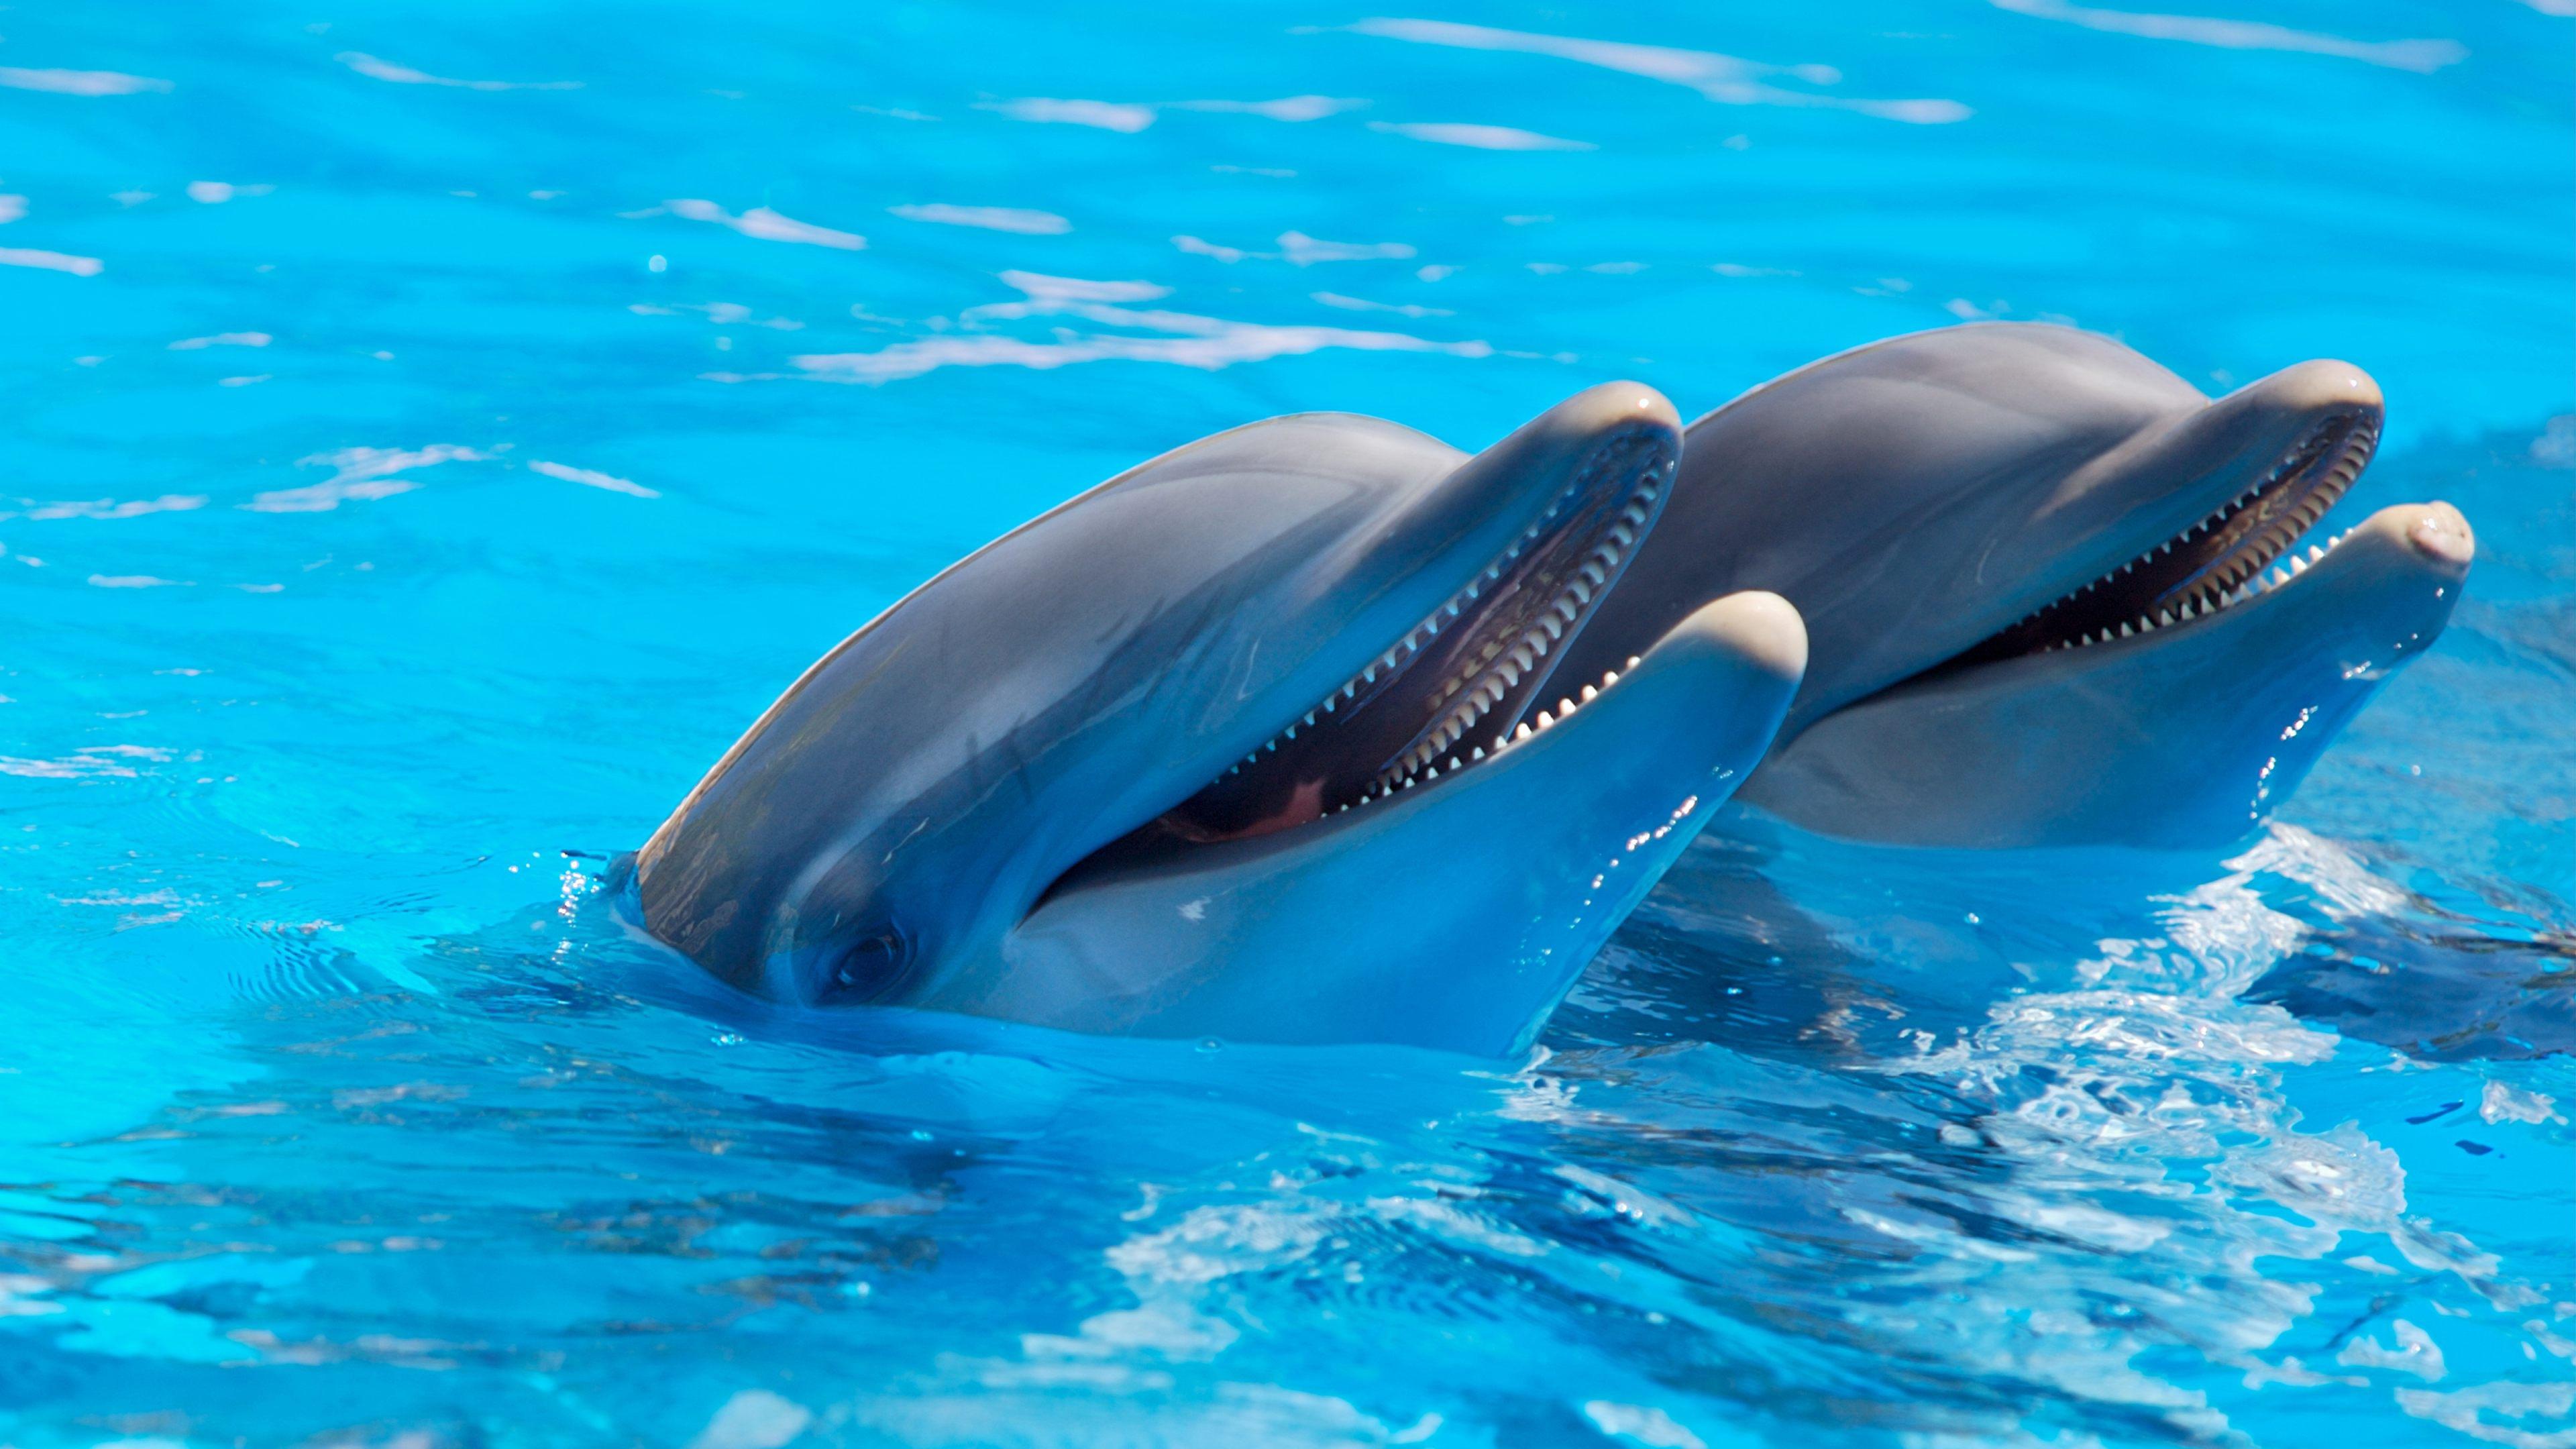 Golfinhos fêmeas sentem prazer com estimulação do clitóris, sugere estudo